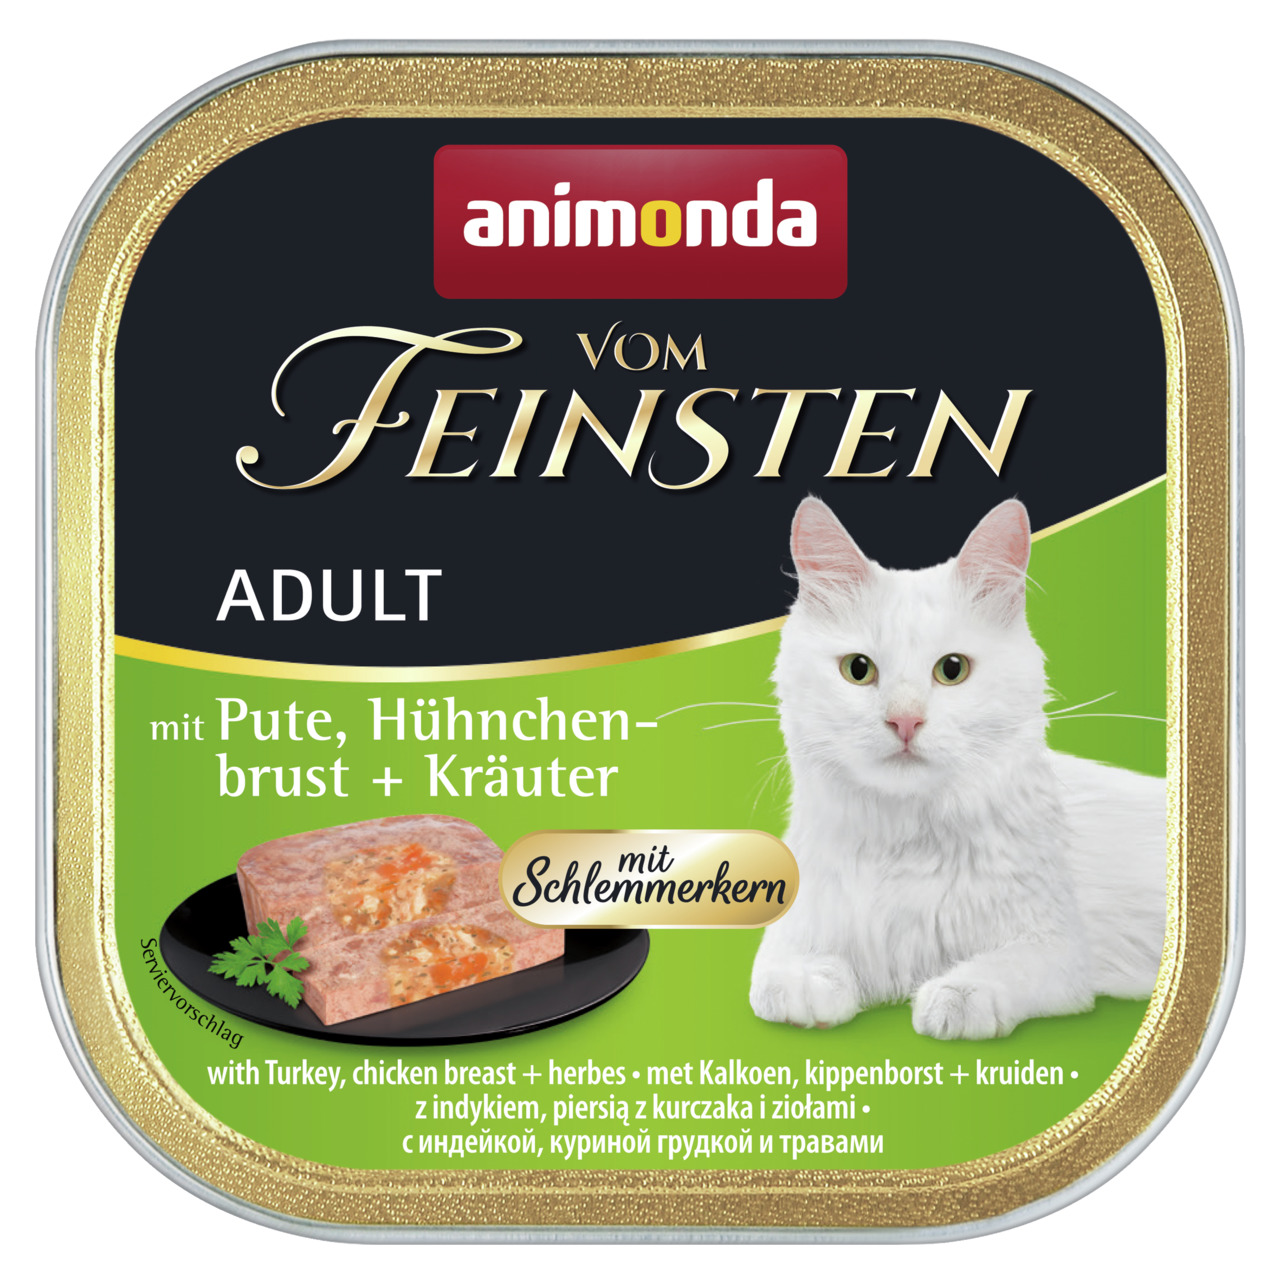 Animonda vom Feinsten Adult mit Pute, Hühnchenbrust + Kräuter mit Schlemmerkern Katzen Nassfutter 100 g